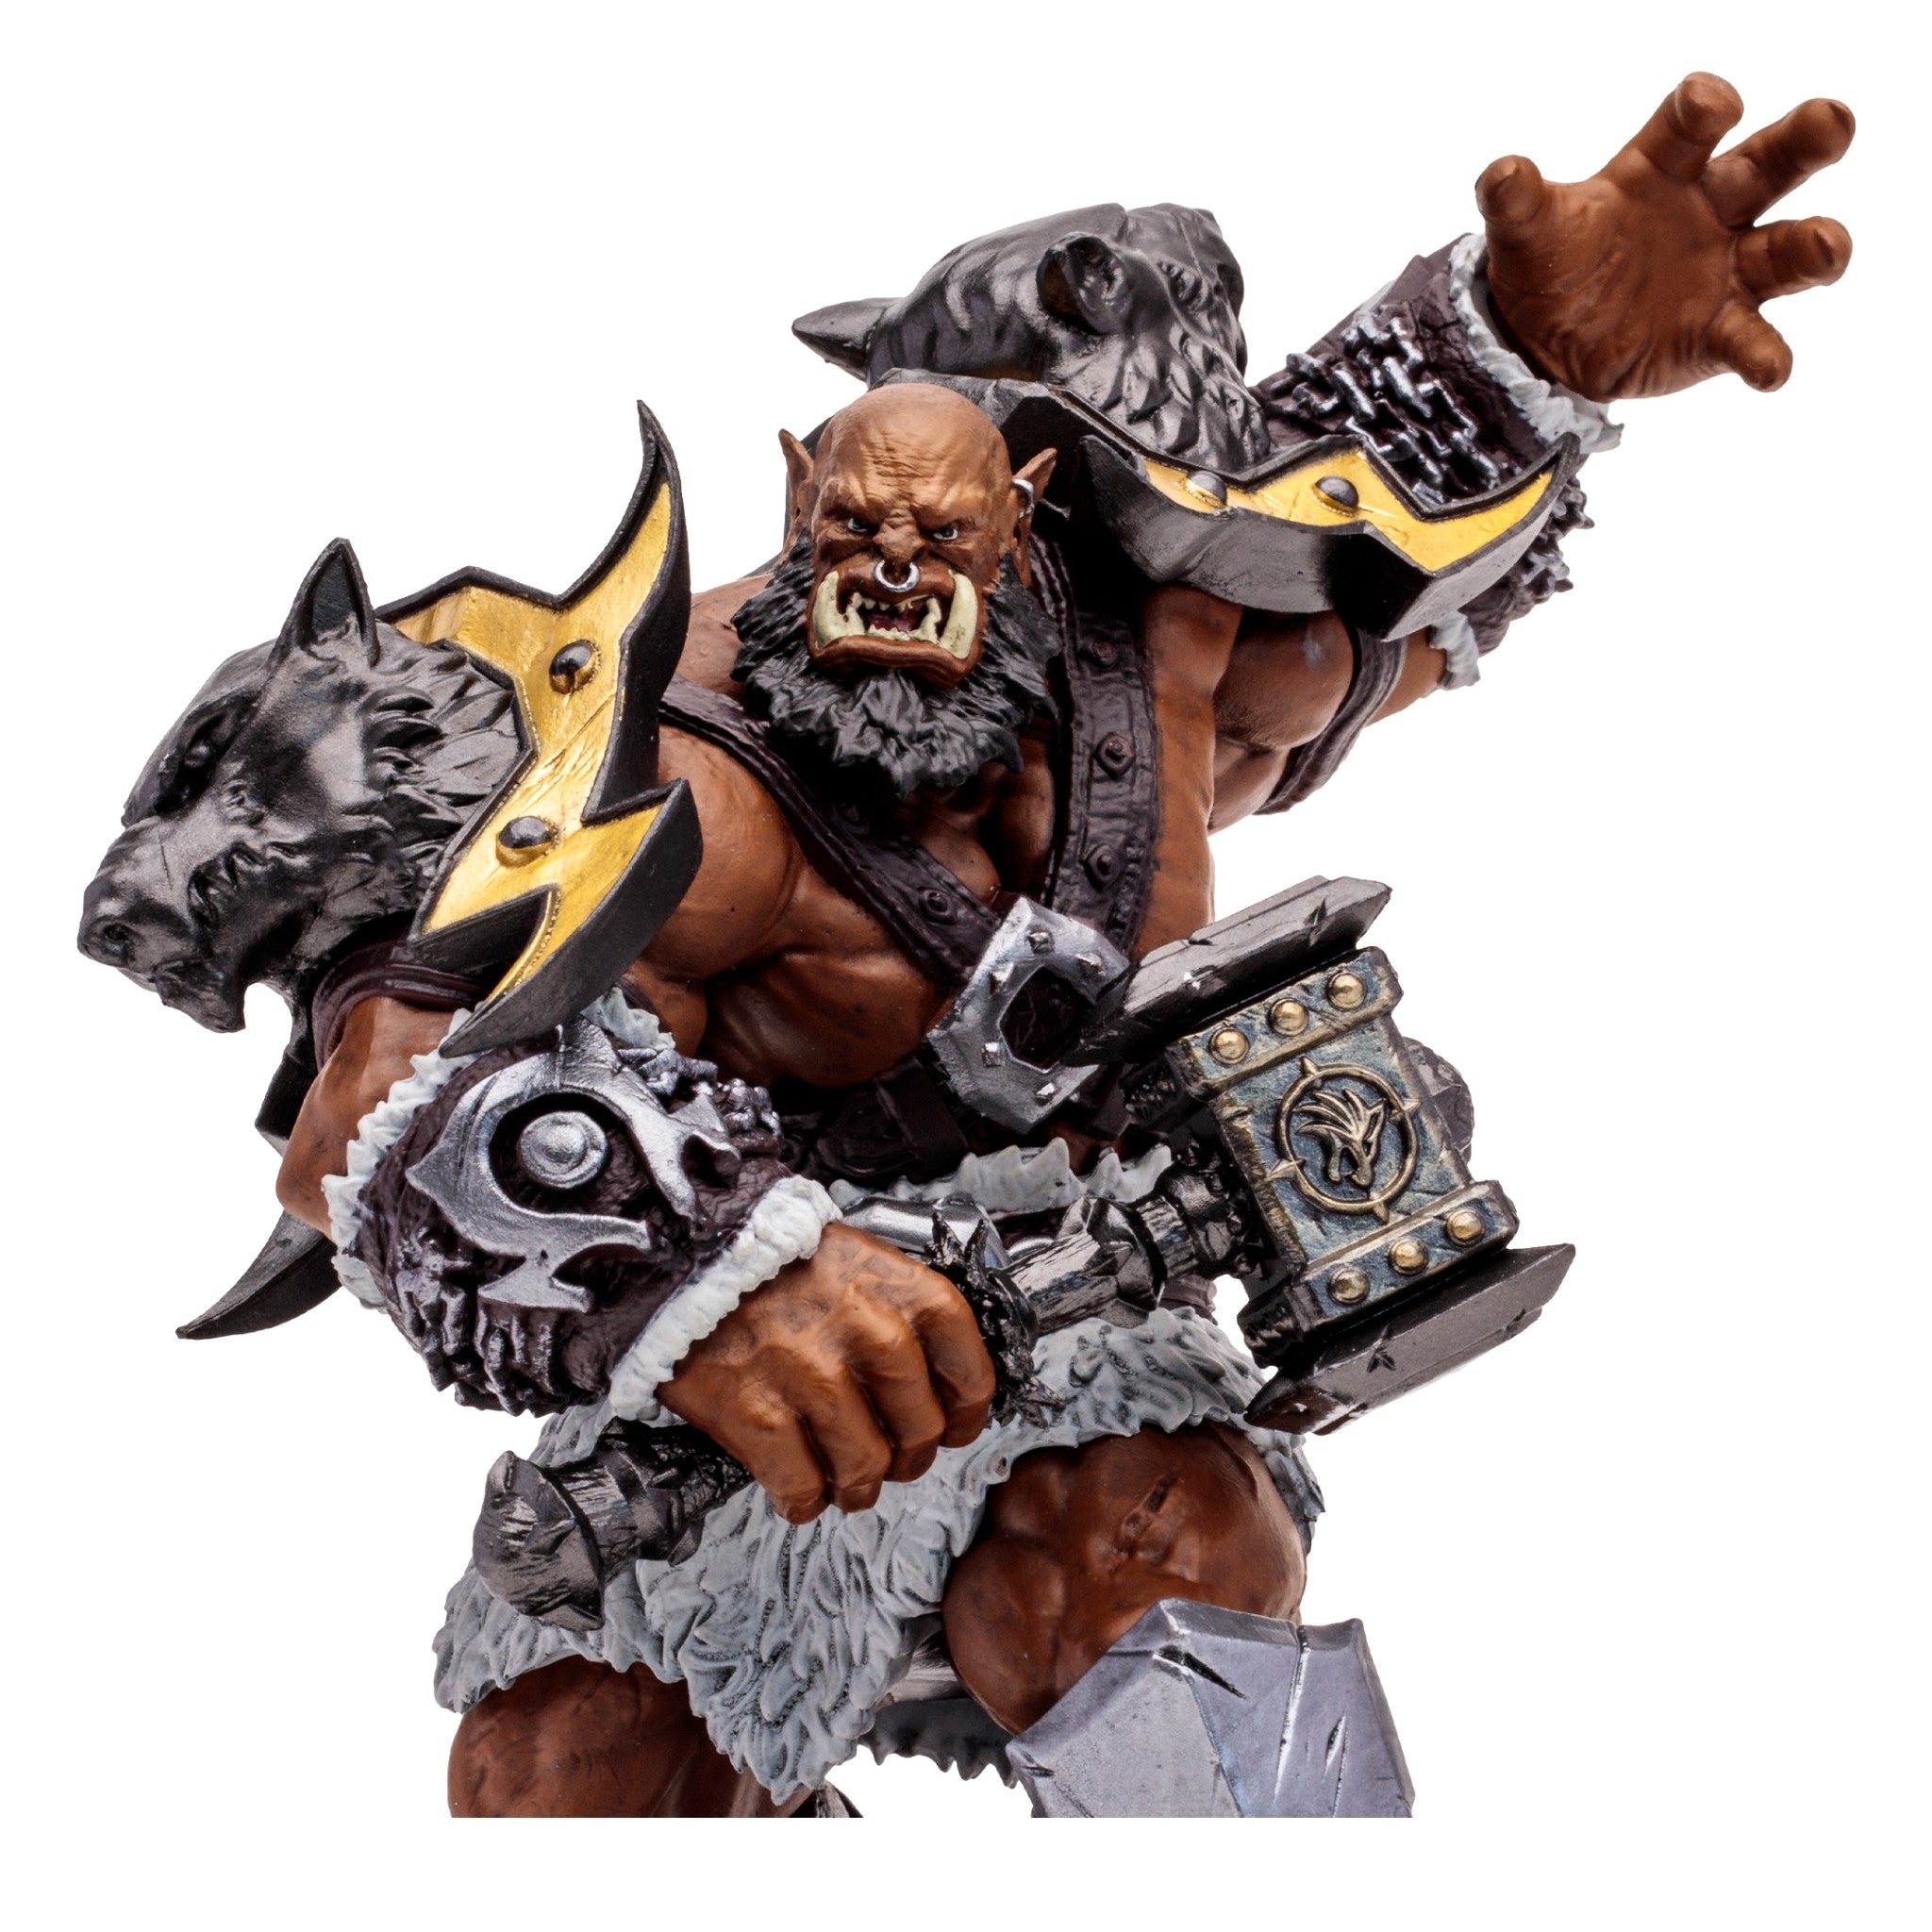 World of Warcraft Orc Warrior Shaman 7" Epic Figure - McFarlane Toys - 0